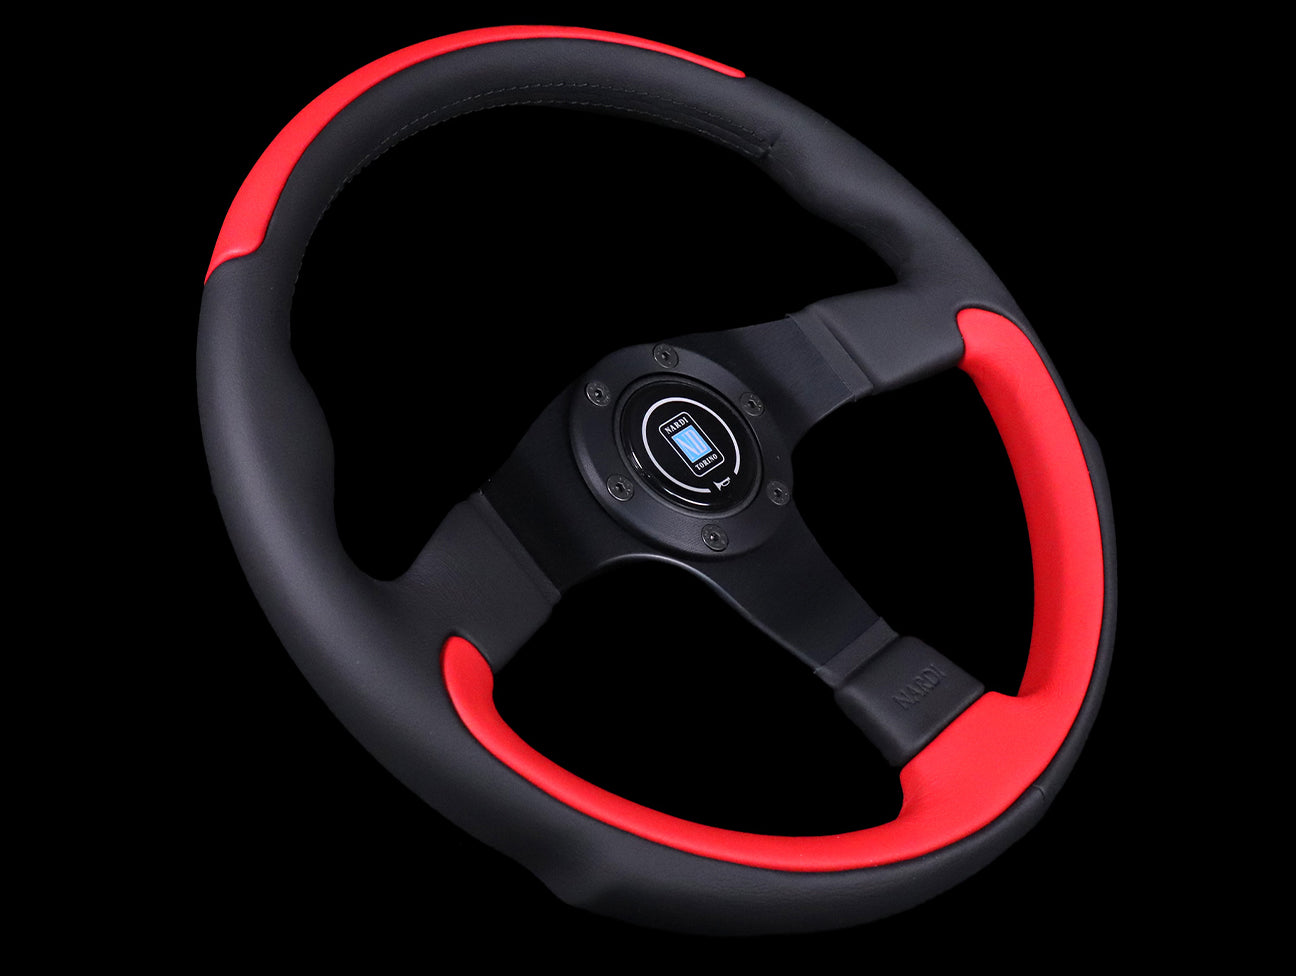 Nardi Leader 350mm Steering Wheel - Black & Red Leather